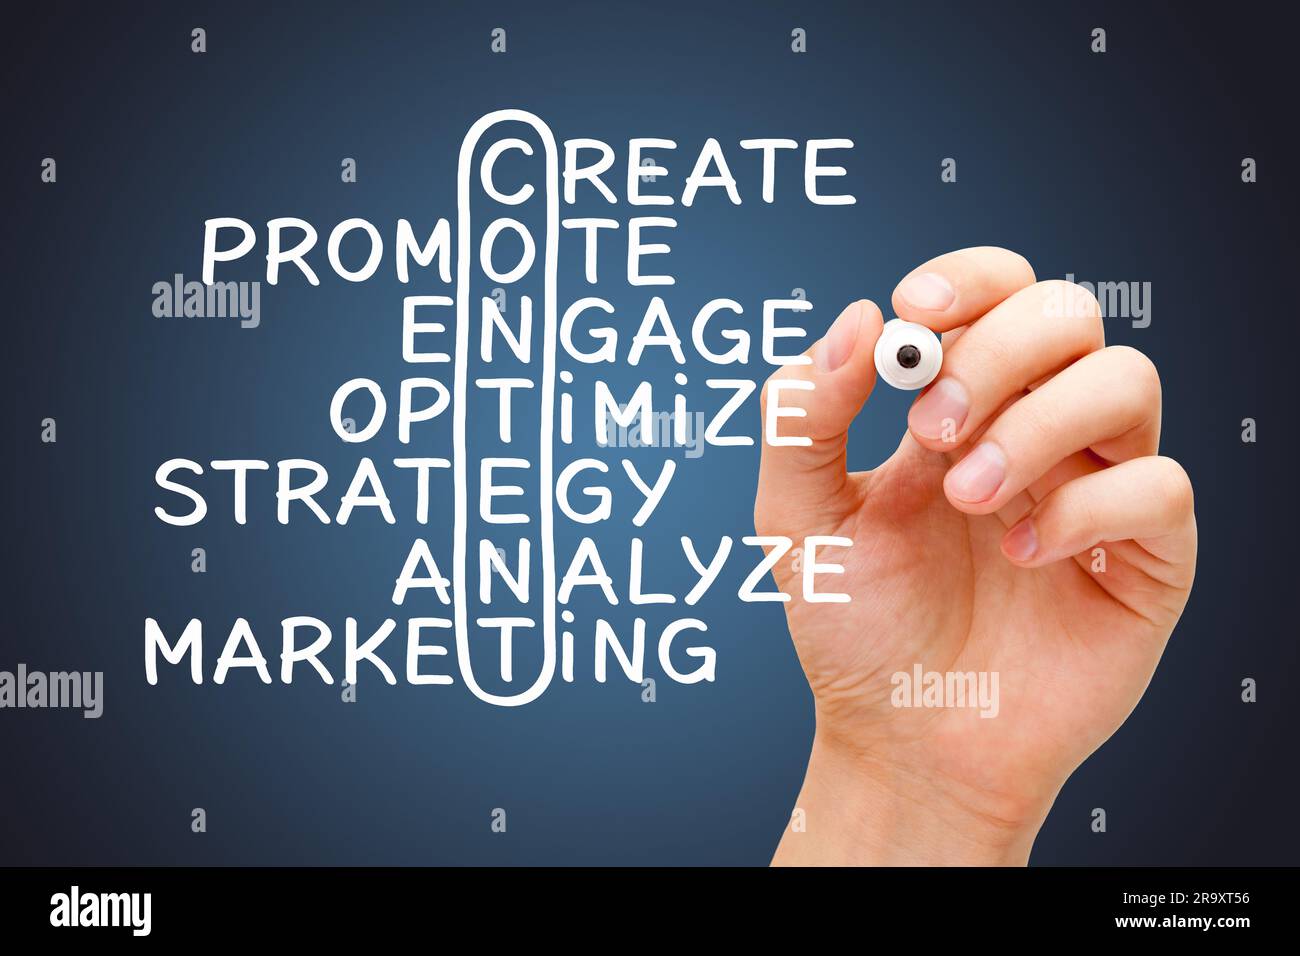 Rédaction manuelle de contenu Marketing concept de mots croisés avec des mots liés créer, promouvoir, engager, optimiser, stratégie, analyse et marketing. Banque D'Images